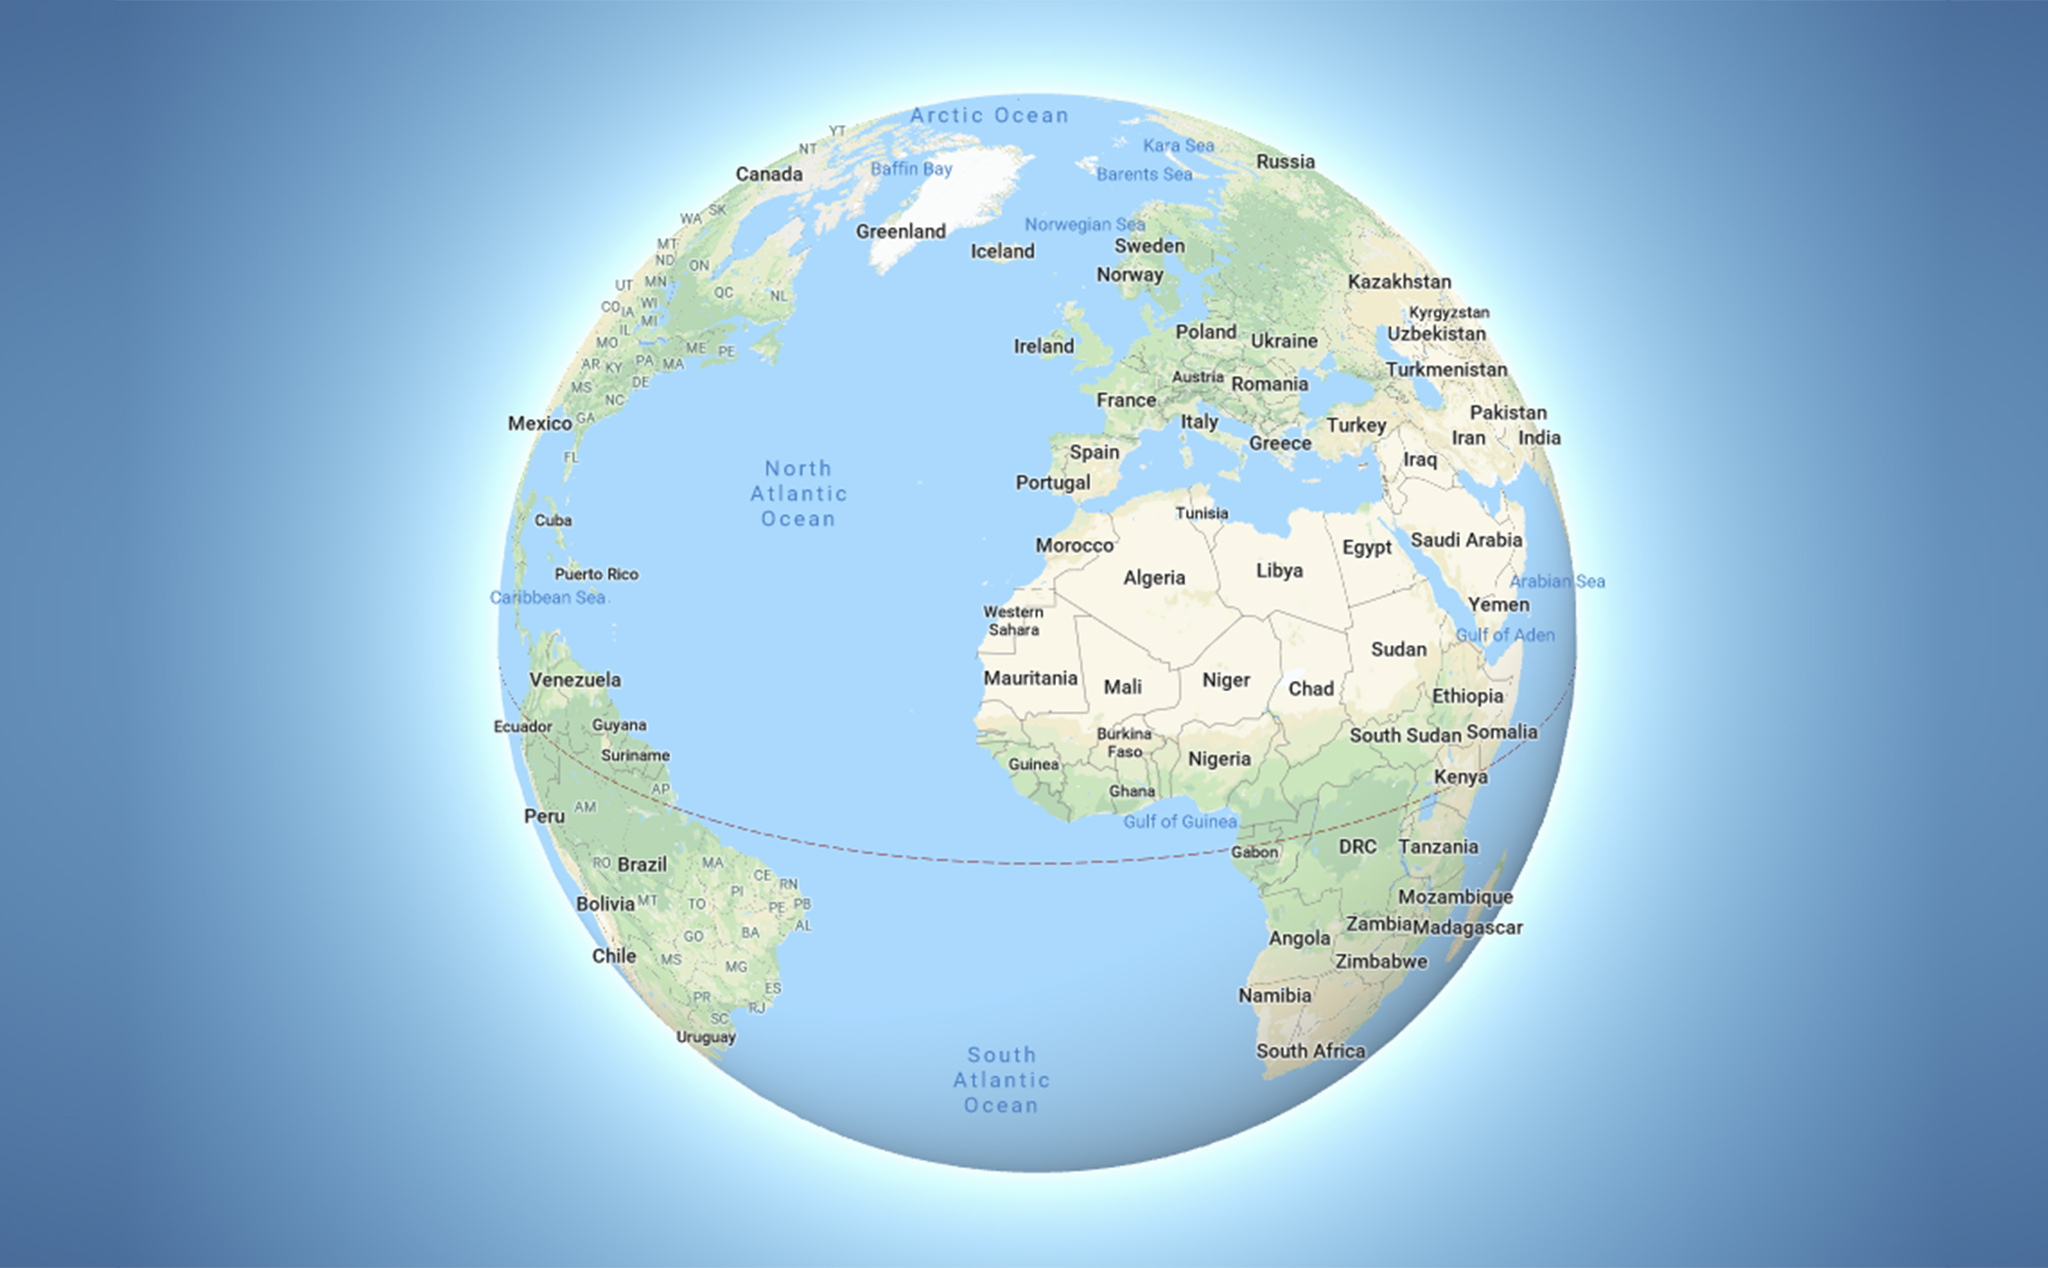 Chế độ 3D Globe trên Google Maps desktop: Khám phá thế giới một cách độc đáo với chế độ 3D Globe trên Google Maps desktop! Giờ đây, bạn có thể xem bản đồ thế giới trong không gian 3 chiều, trải nghiệm những khung cảnh tuyệt đẹp và tìm hiểu về các địa danh nổi tiếng trên toàn cầu. Hãy sử dụng công nghệ tuyệt vời này để mở rộng tầm nhìn của mình.